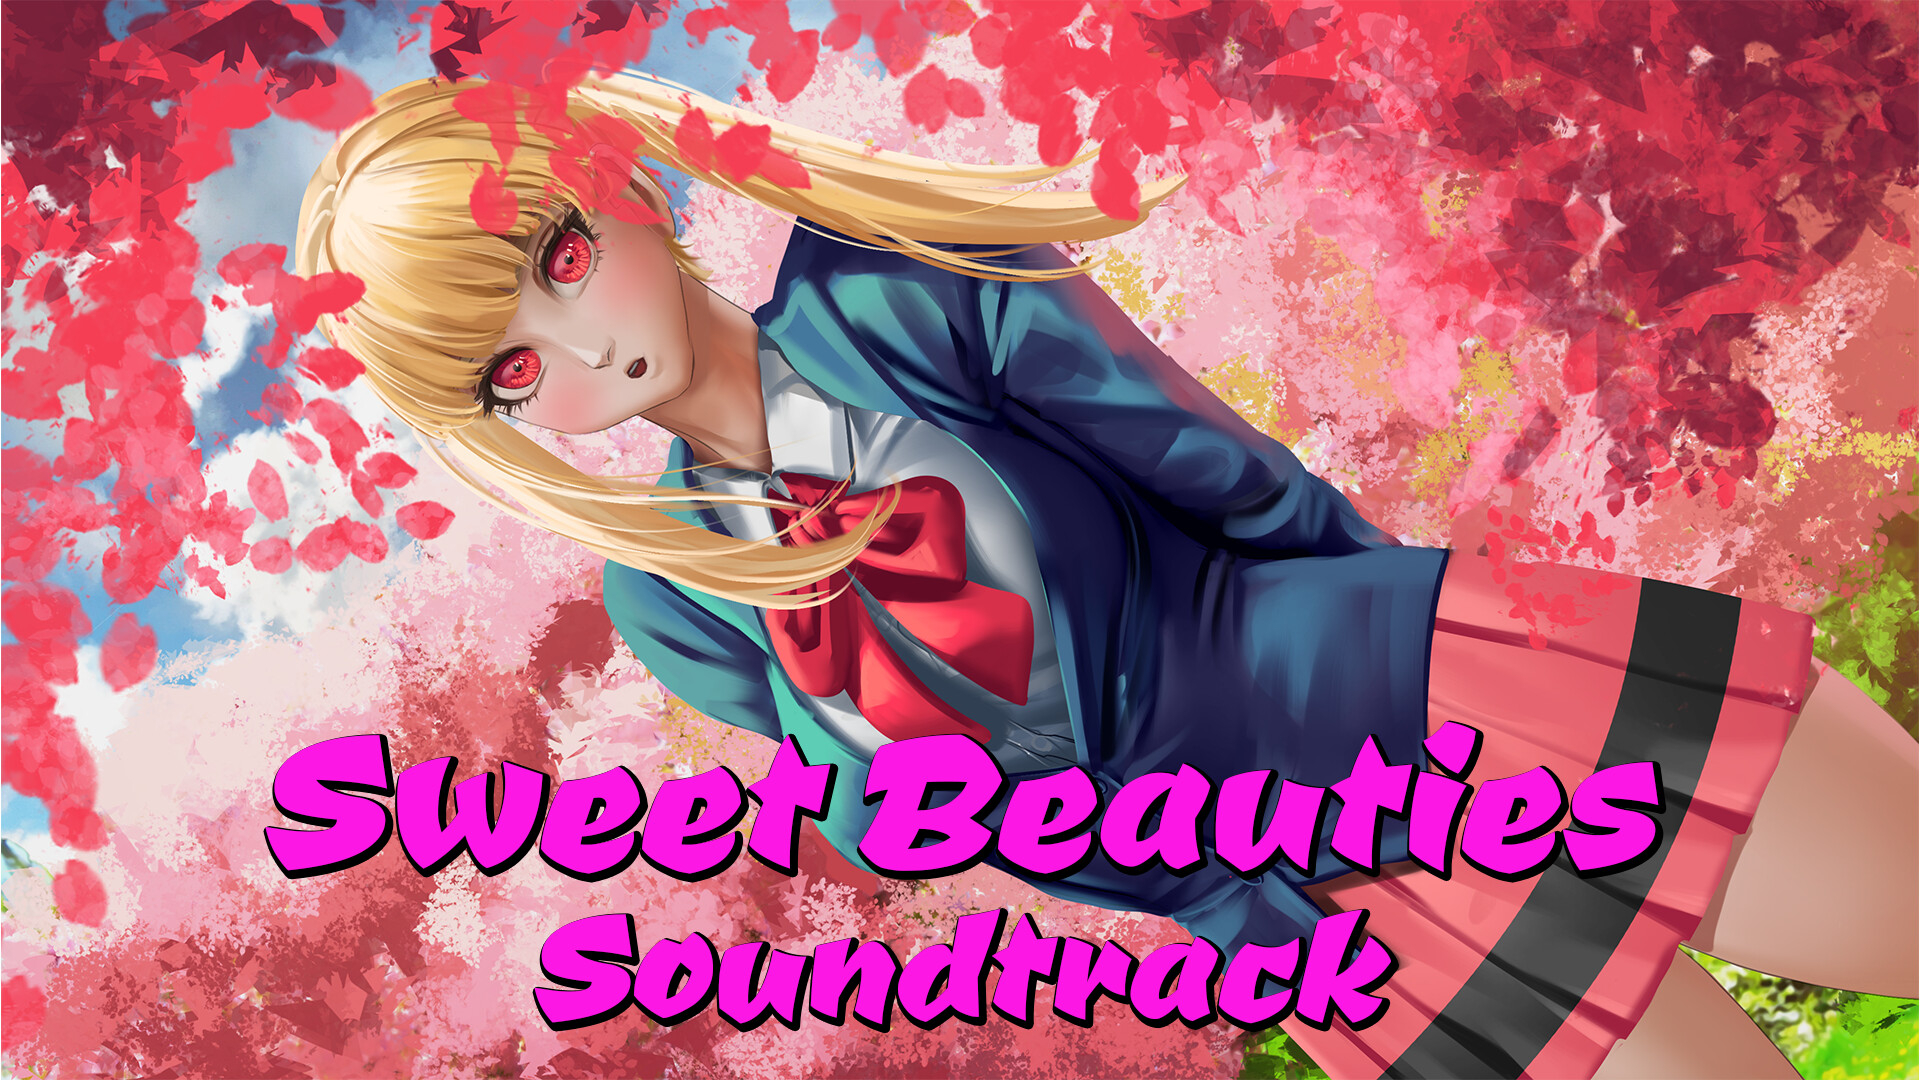 Sweet Beauties Soundtrack Featured Screenshot #1